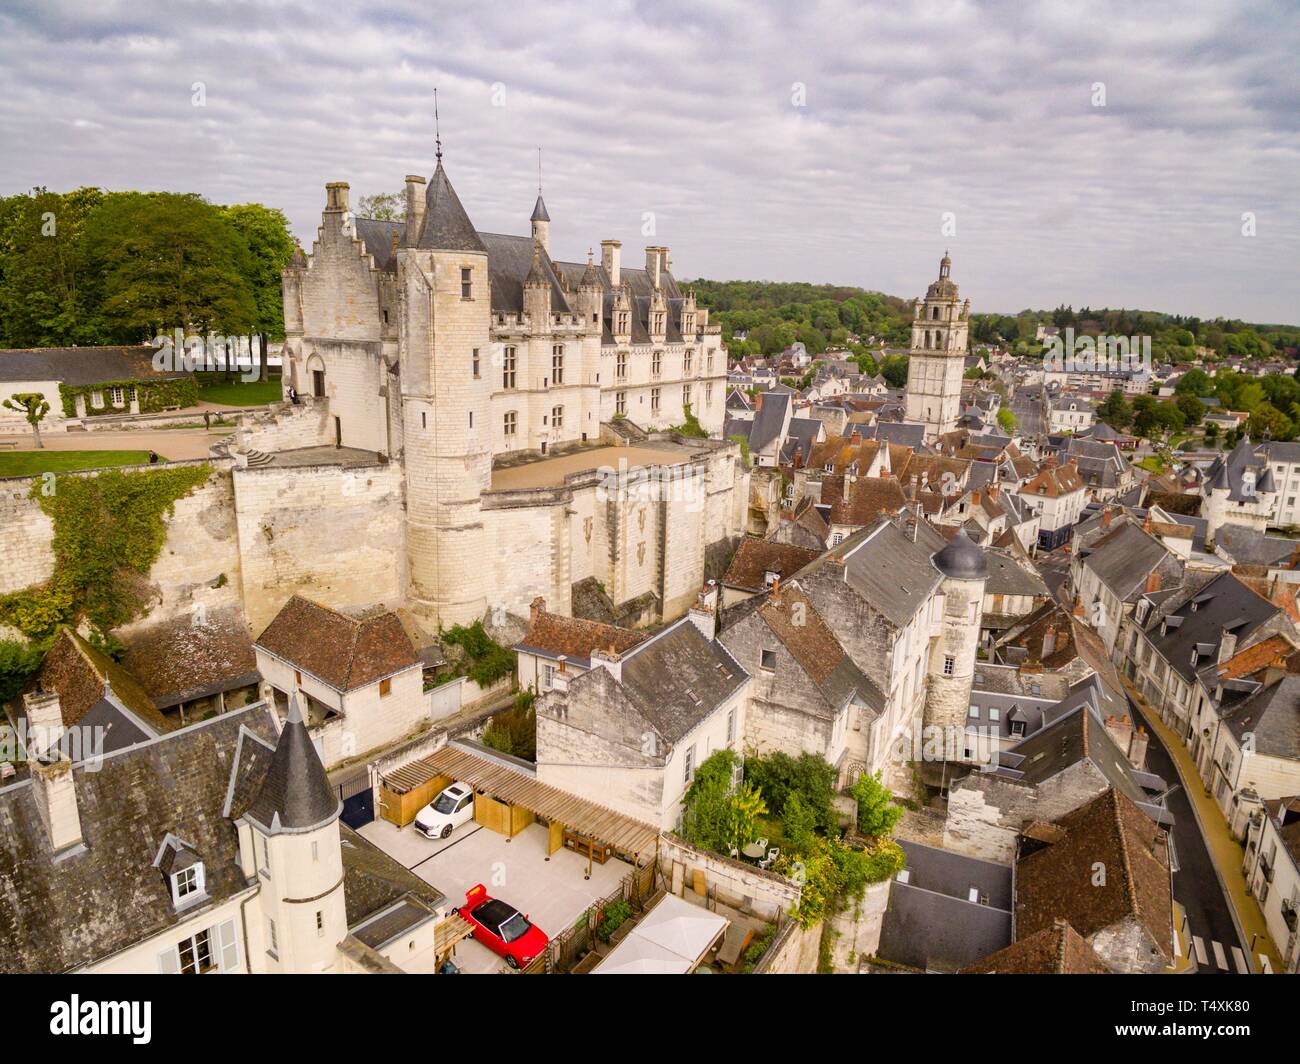 vivienda real de los Valois durante la Guerra de los Cien Años, Loches, Indre, France,Western Europe. Stock Photo